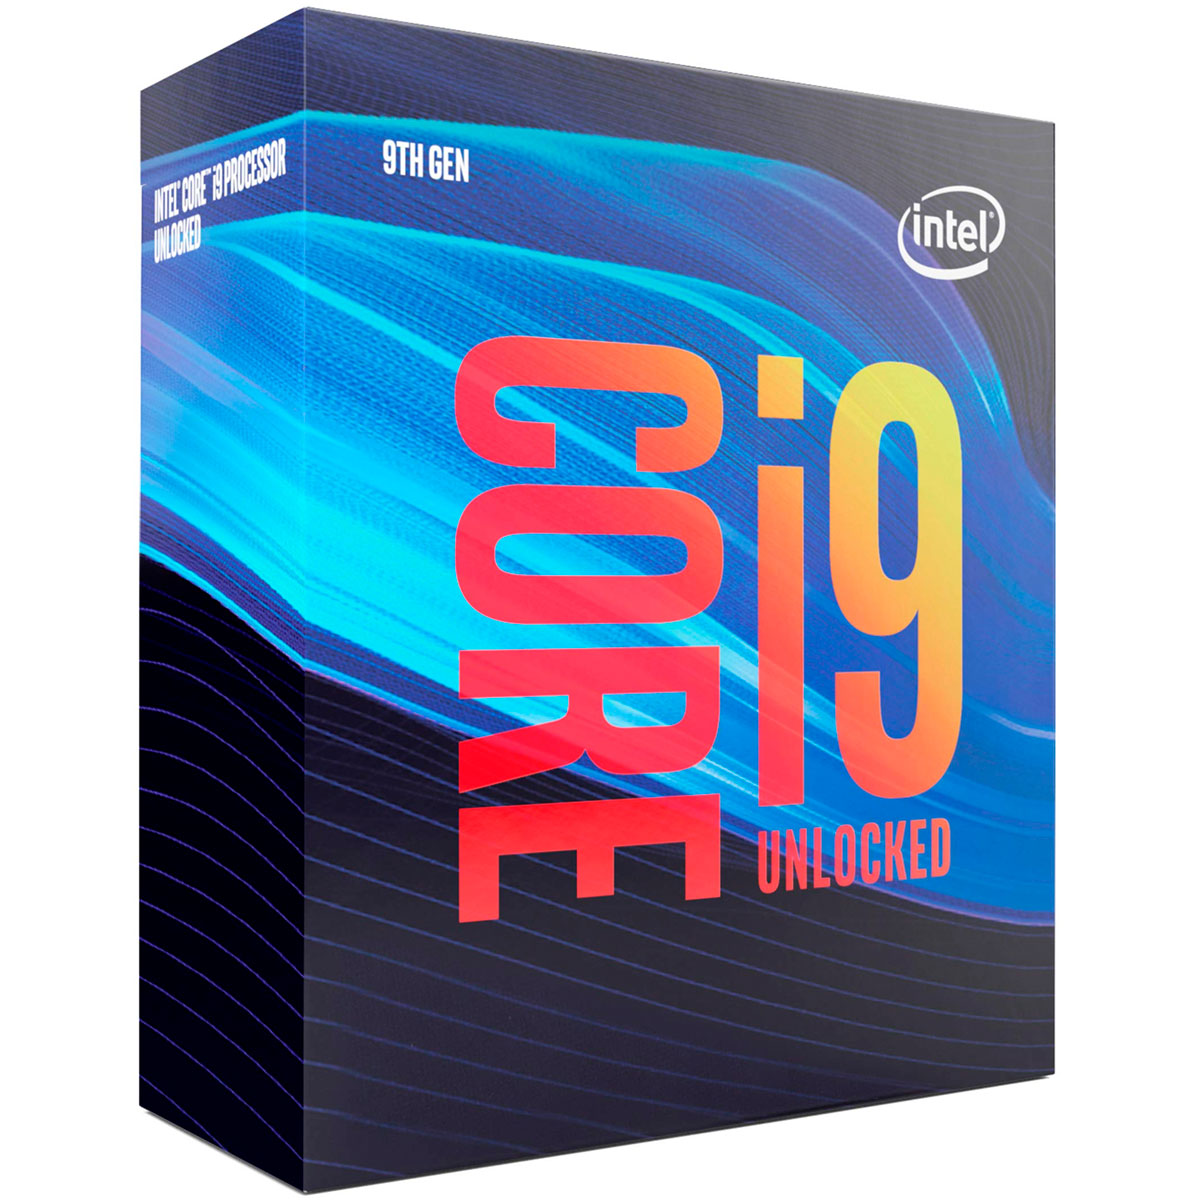 Intel® Core i9 9900 - LGA 1151 - 3.1GHz (Turbo 5.0GHz) - Cache 16MB - 9ª Geração - BX80684I99900